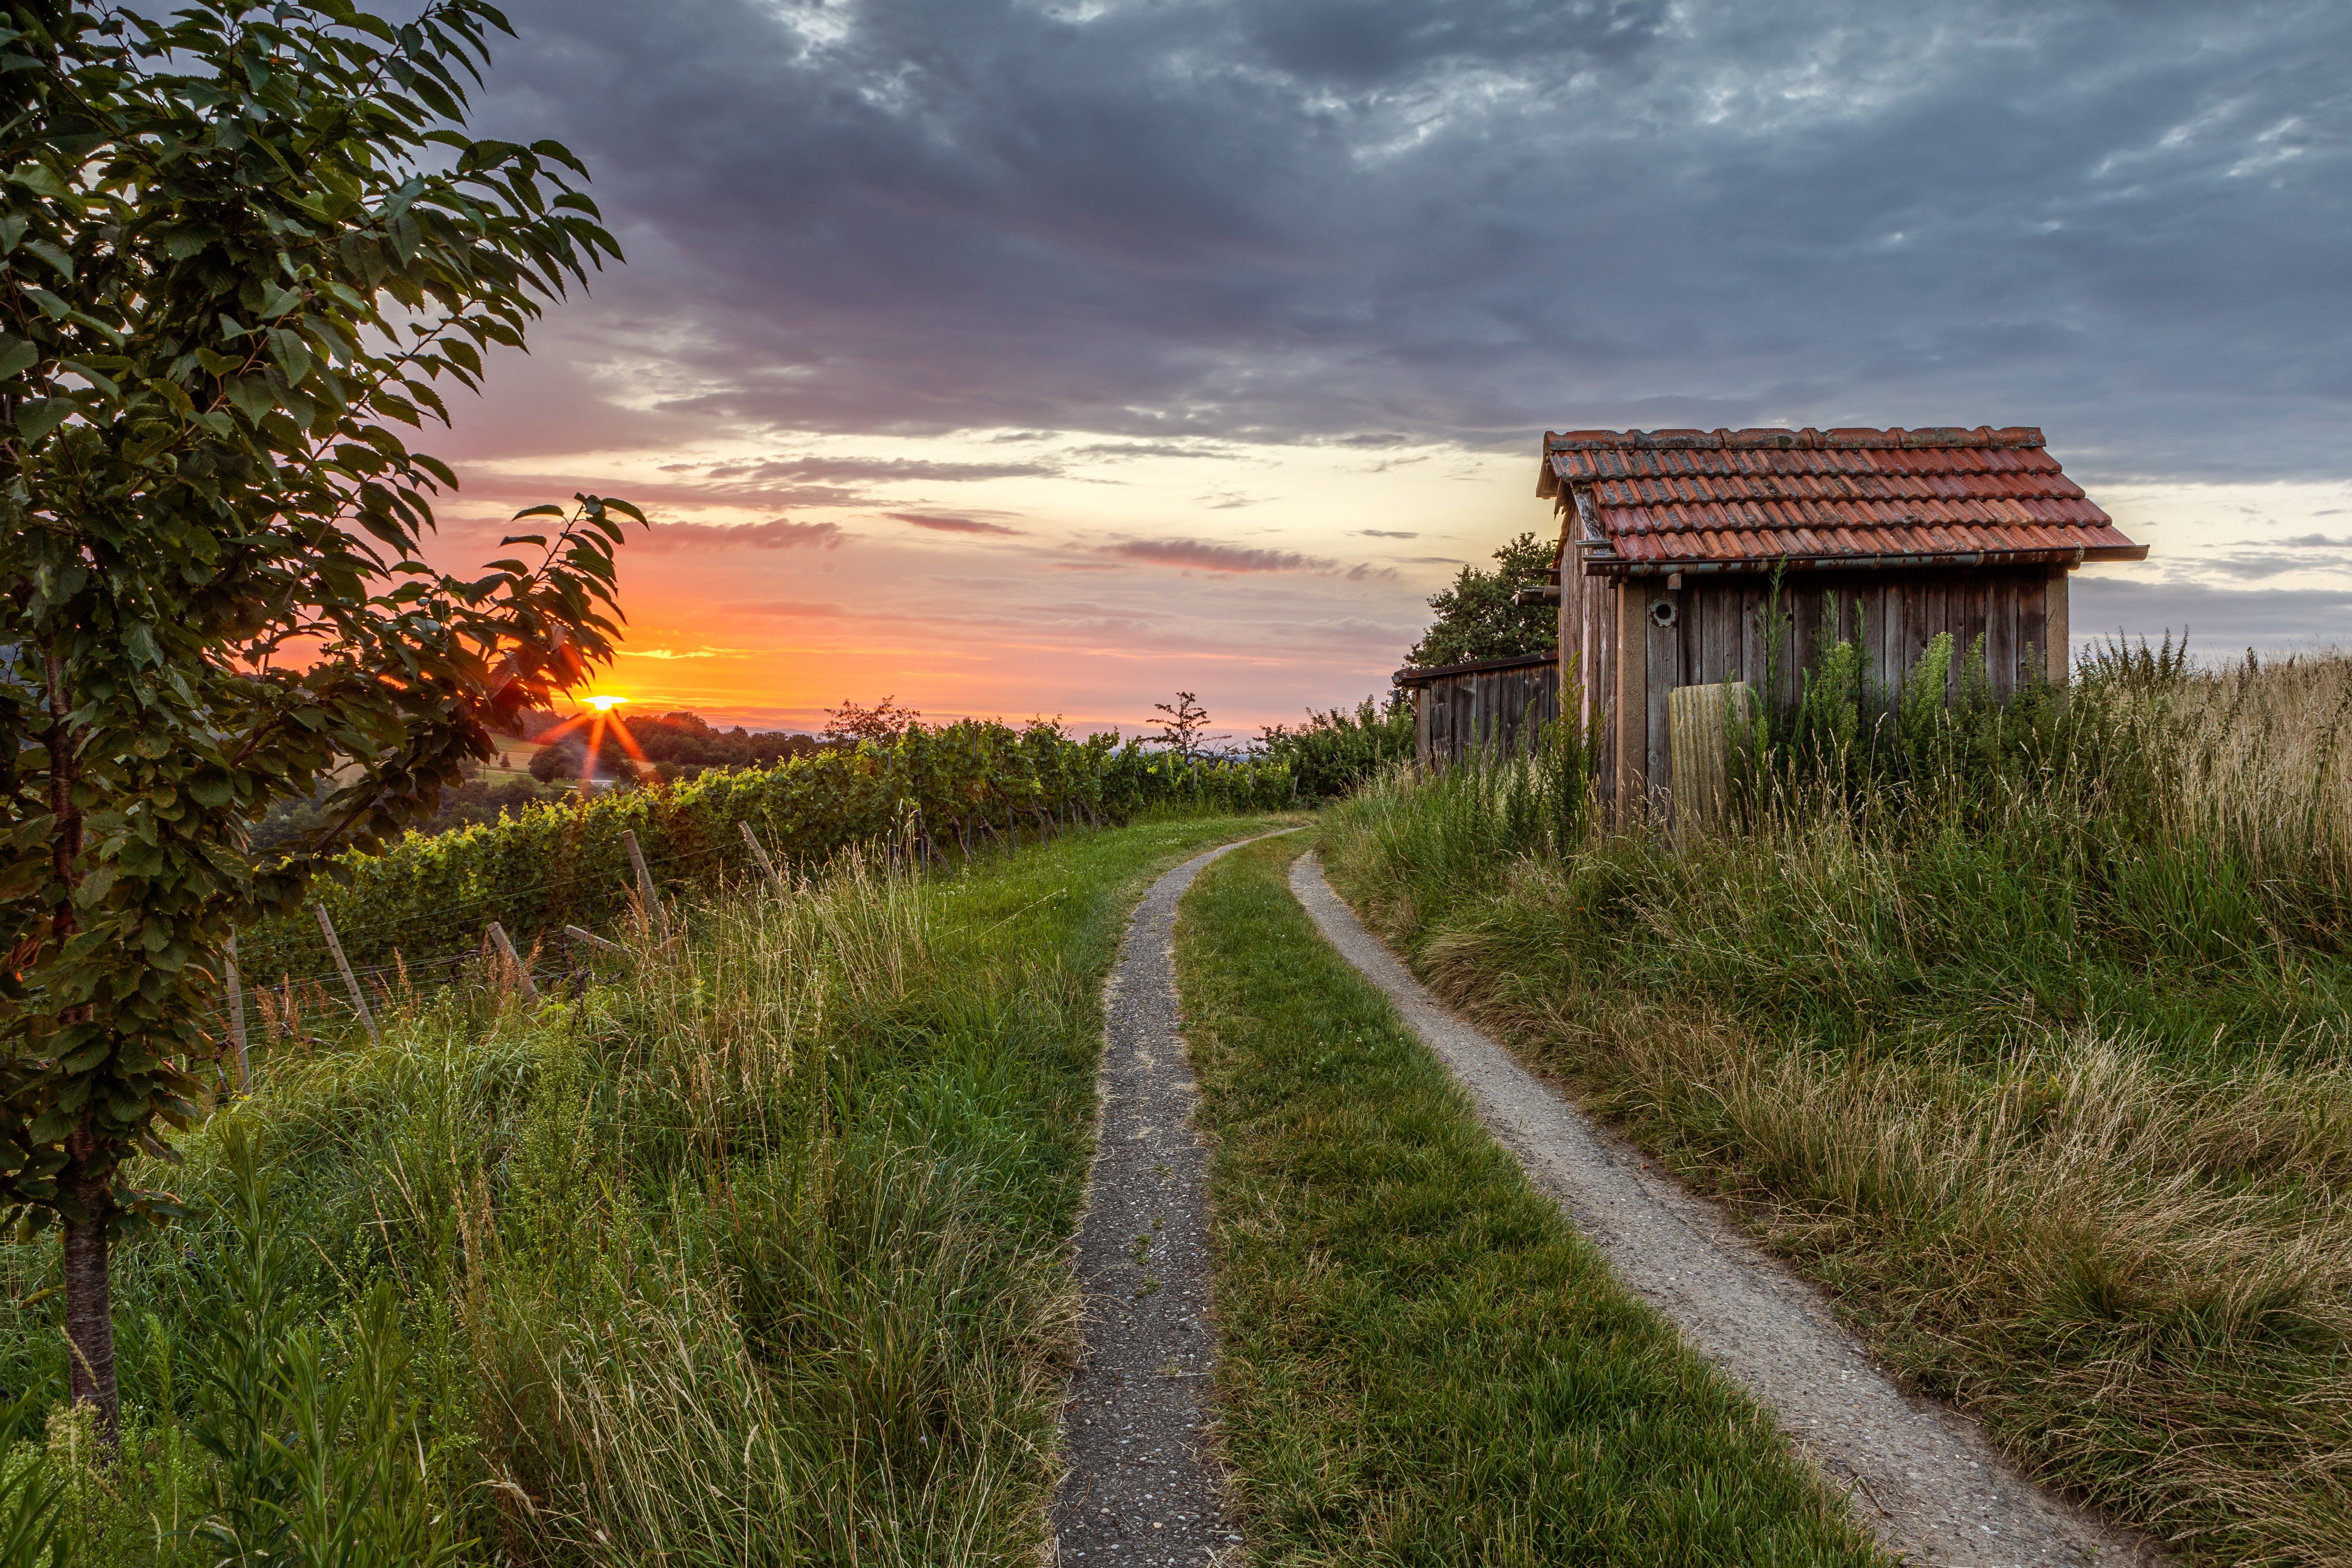 Als Jakob und seine Schwestern anfingen, sich im Wald umzusehen, fanden sie eine alte Hütte. | Quelle: Shutterstock